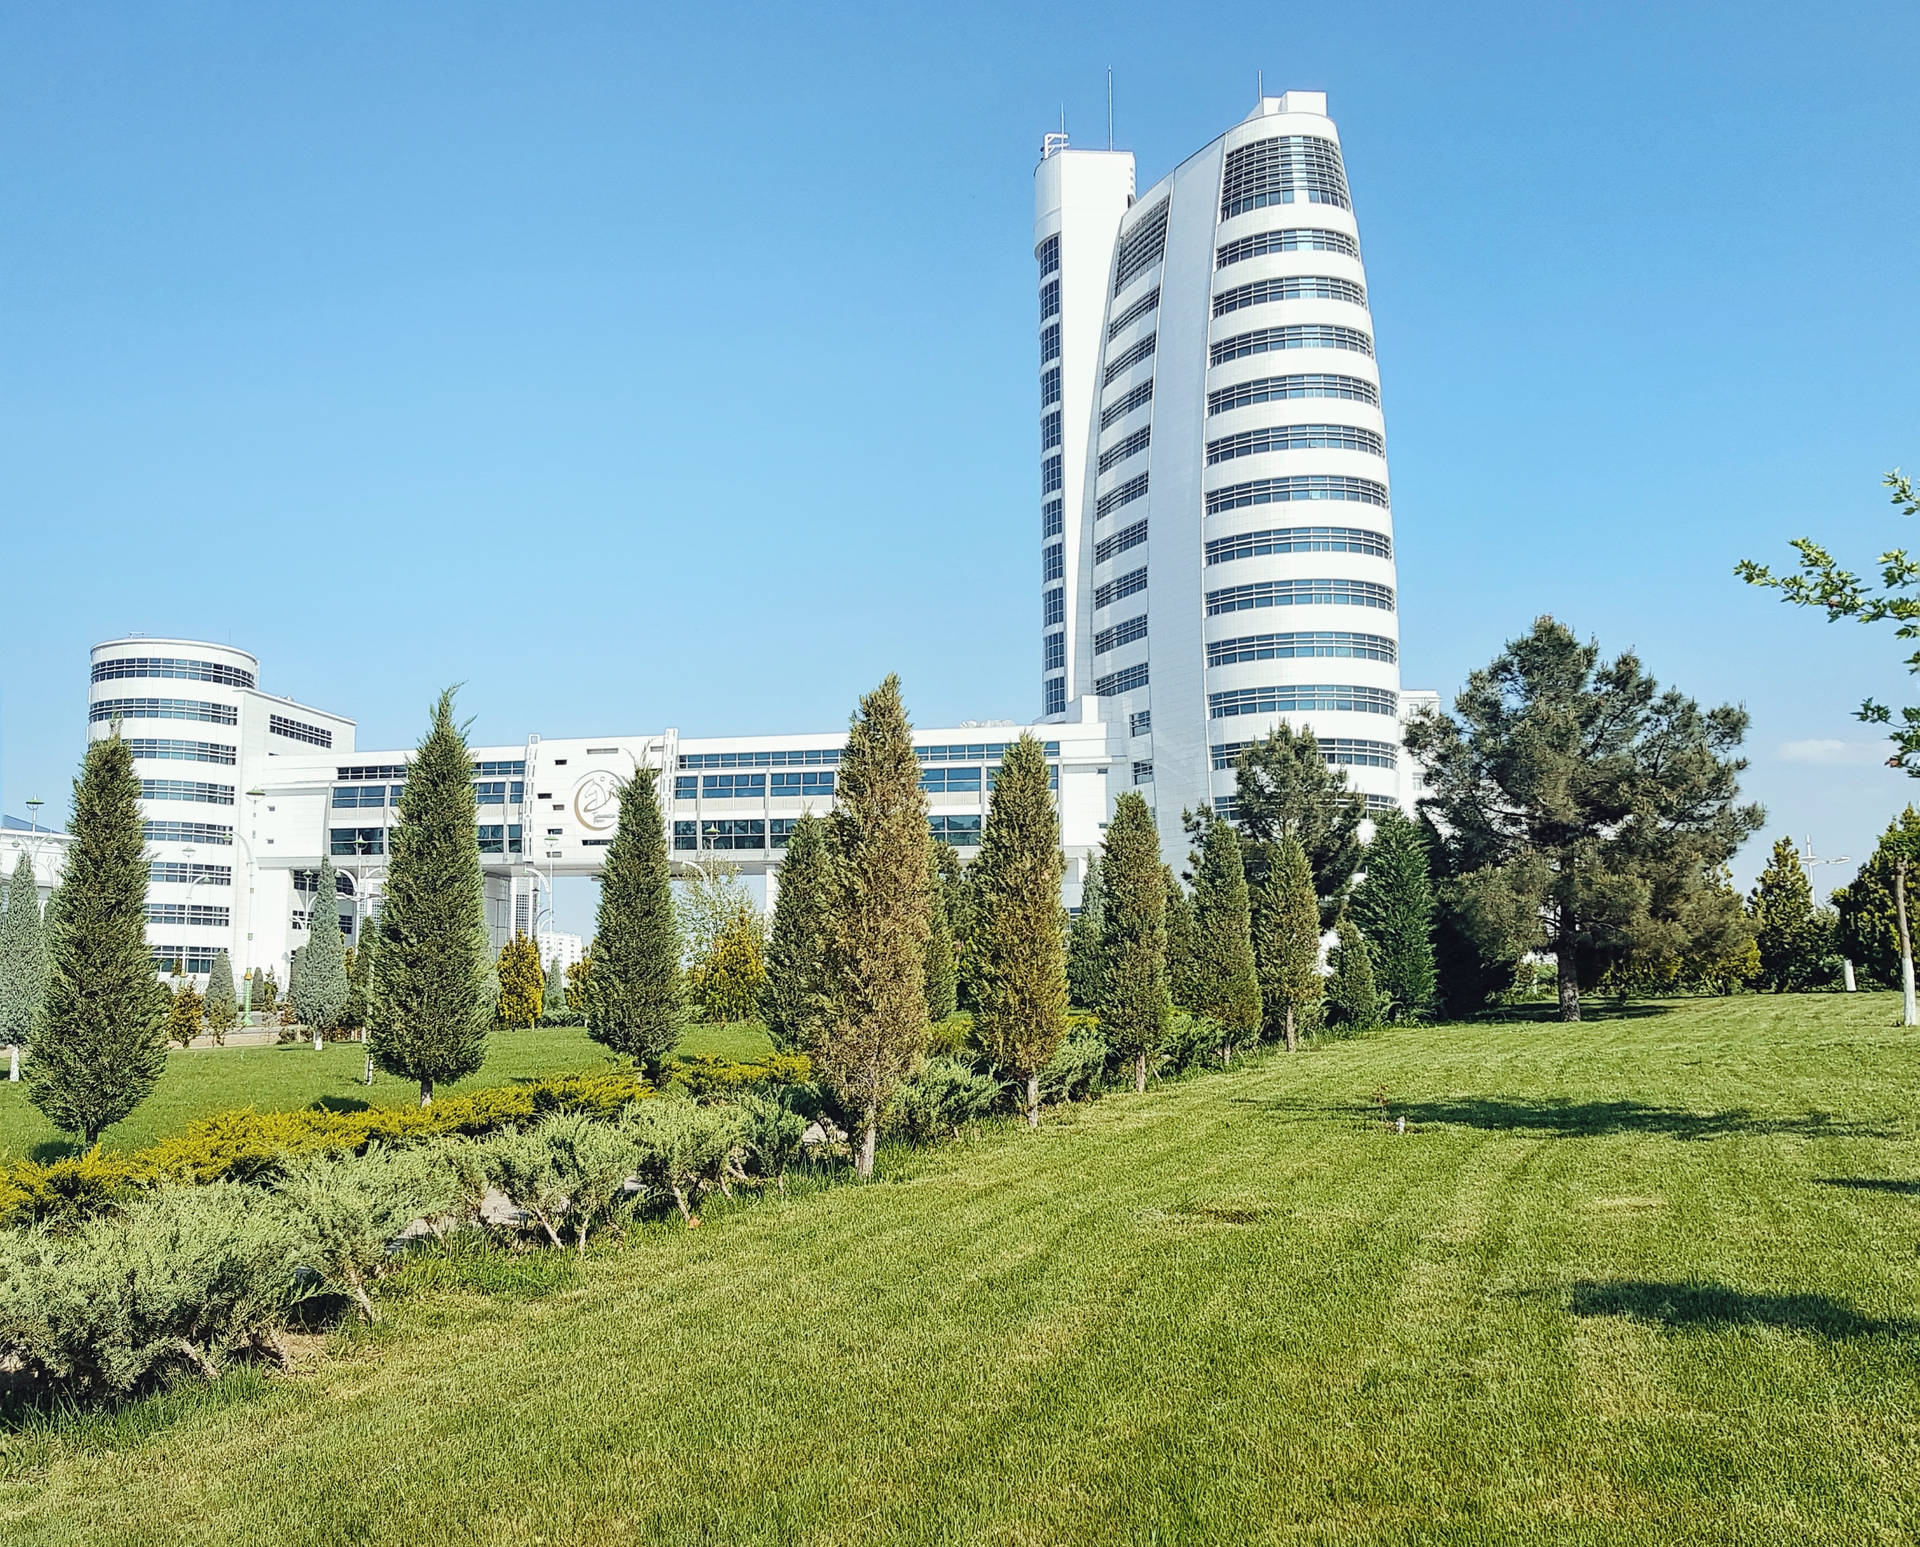 Turkmenistan Ashgabat Buildings Background